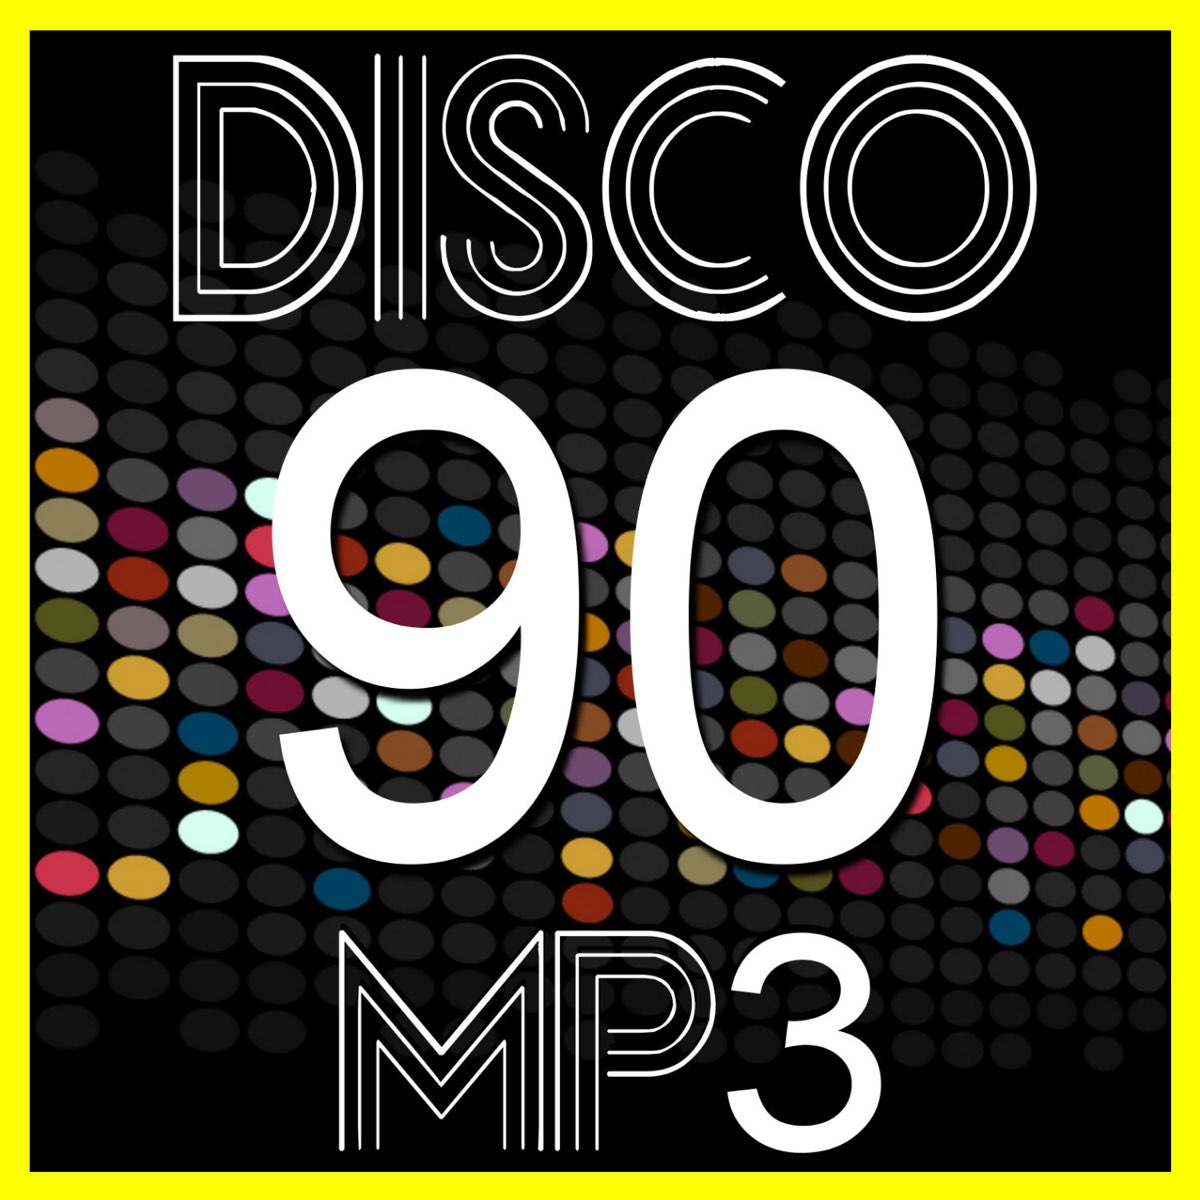 Disco 90 Mp3 - Álbum de Varios Artistas - Apple Music